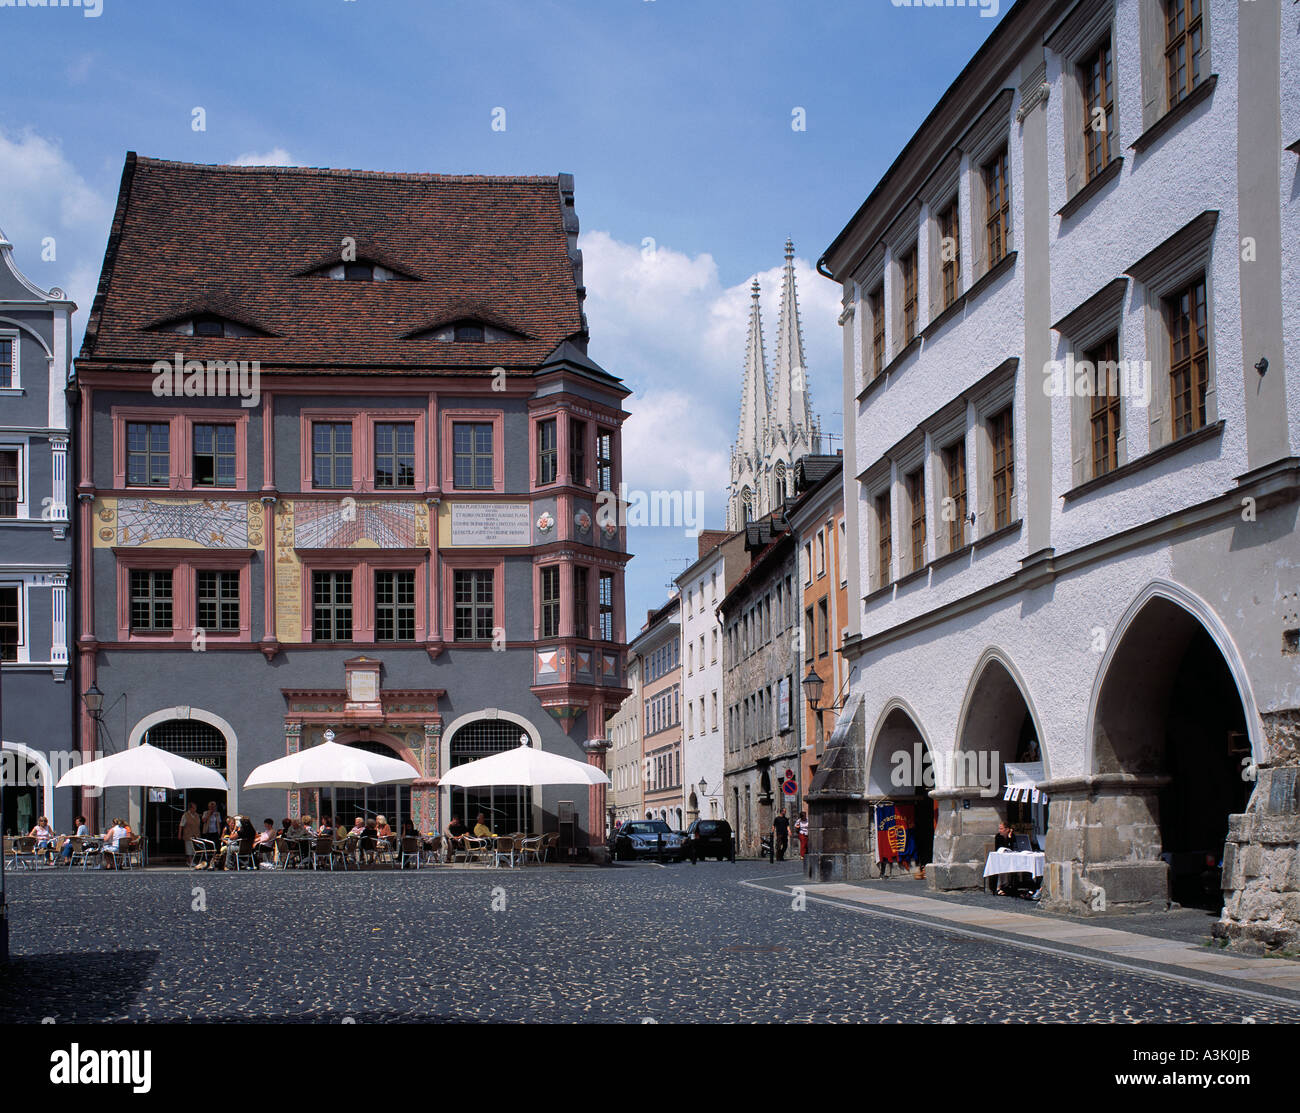 Ratsapotheke und Lange Laeuben am Untermarkt in Goerlitz, im Hintergrund Tuerme der Kirche St. Peter und Paul Stock Photo